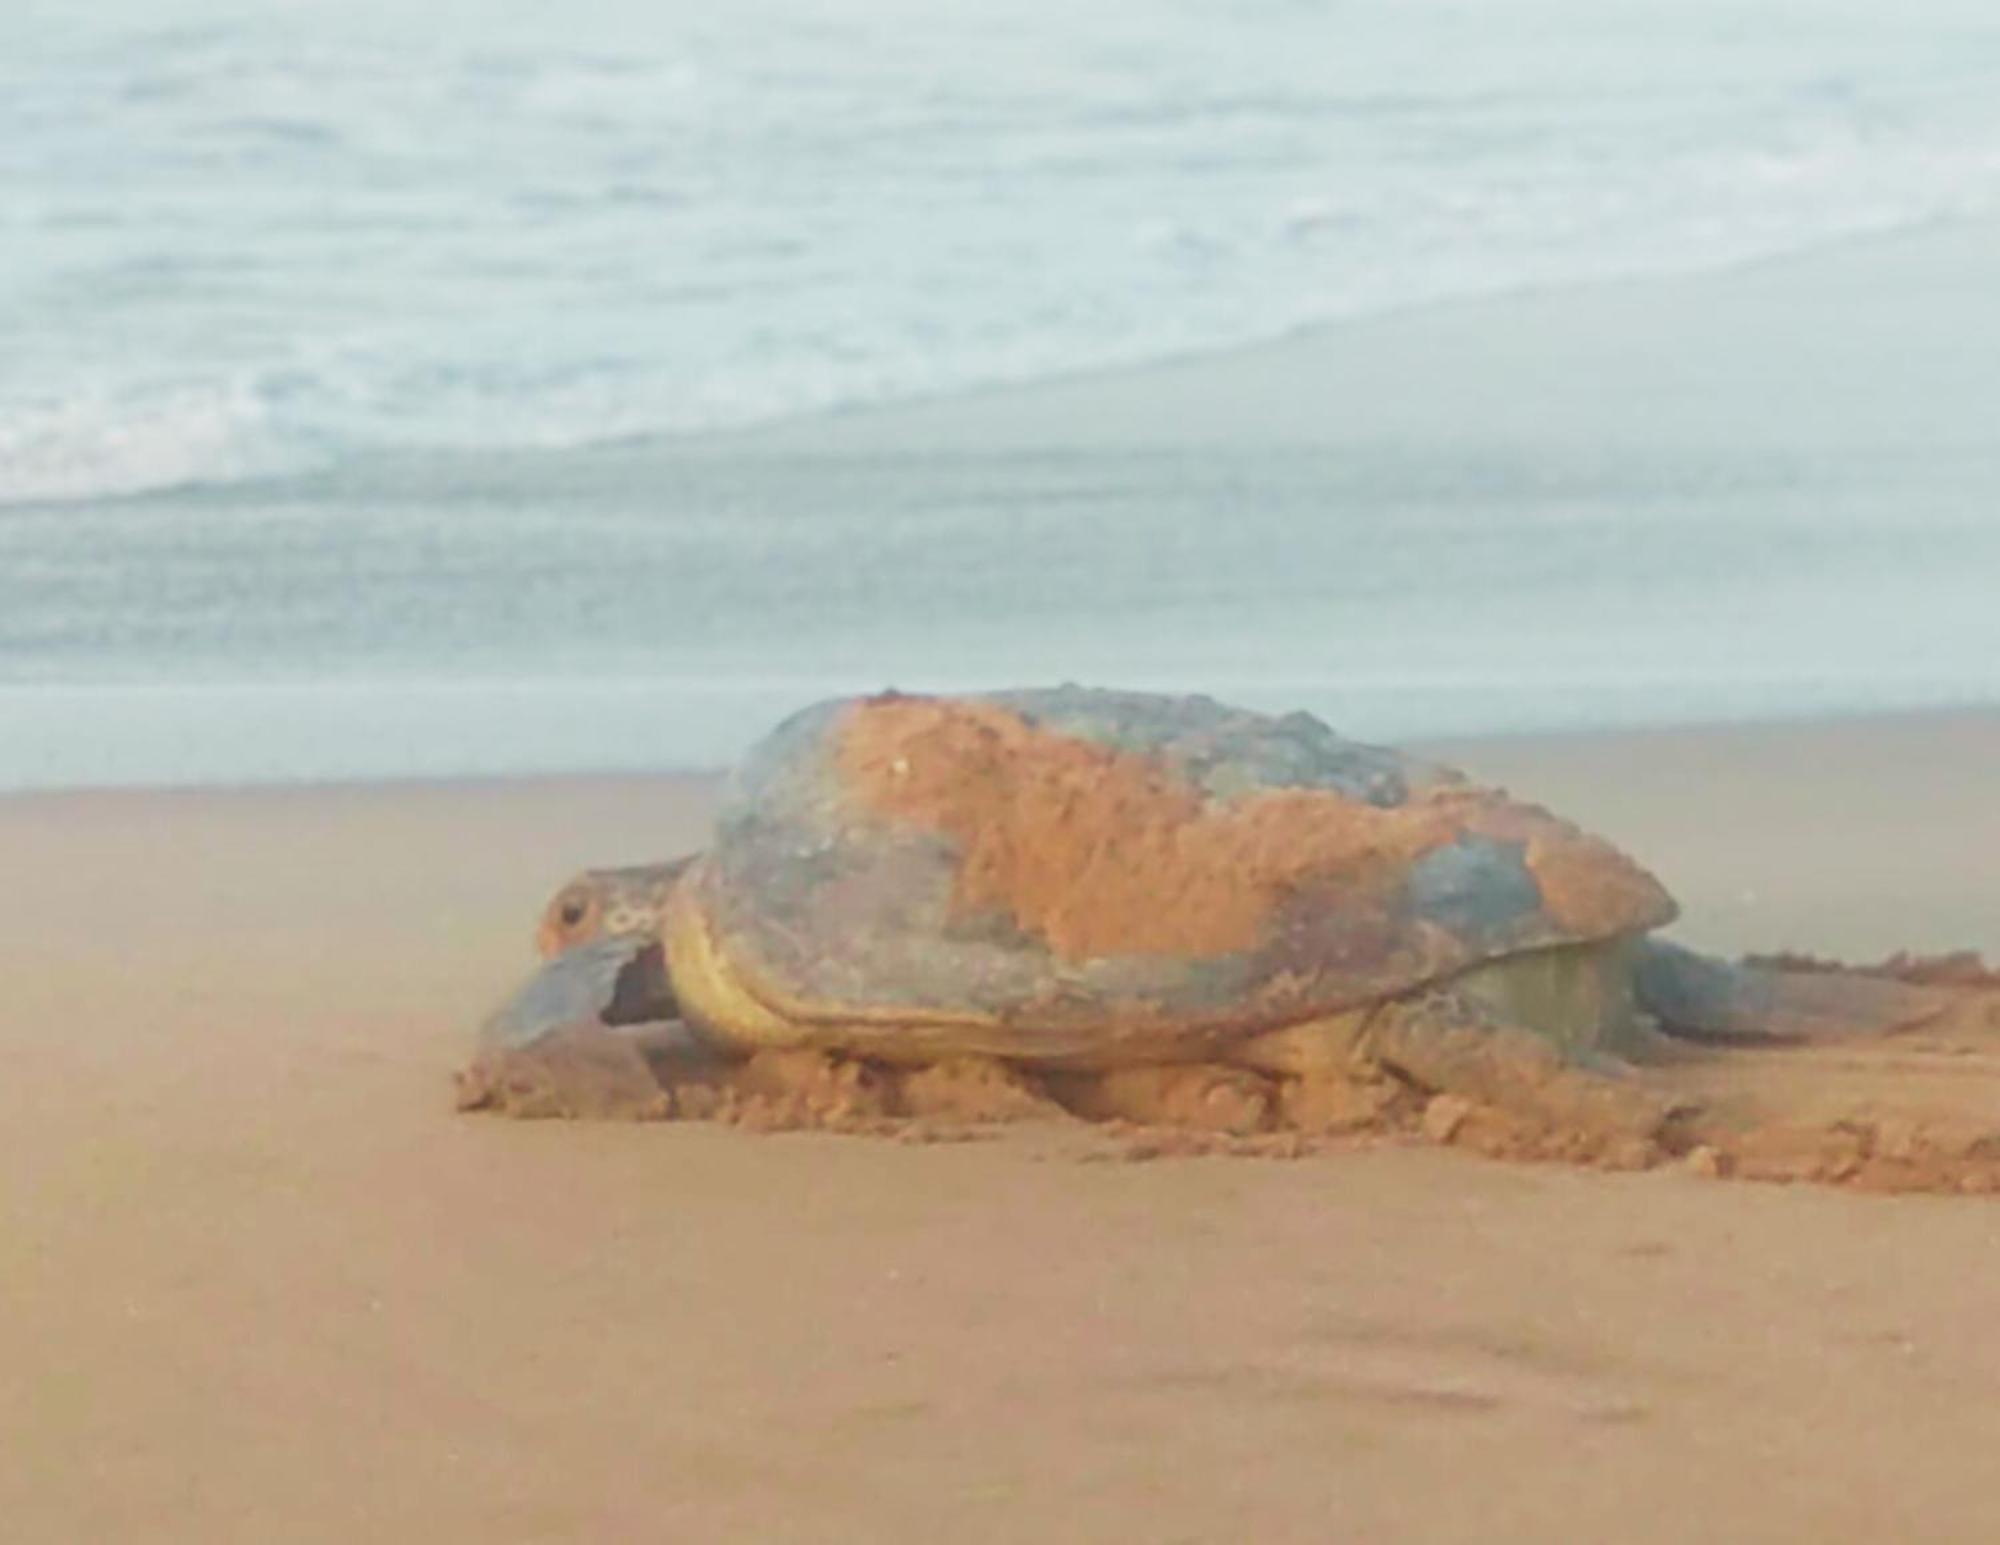 Amour At Turtle Beach Tangalle Extérieur photo